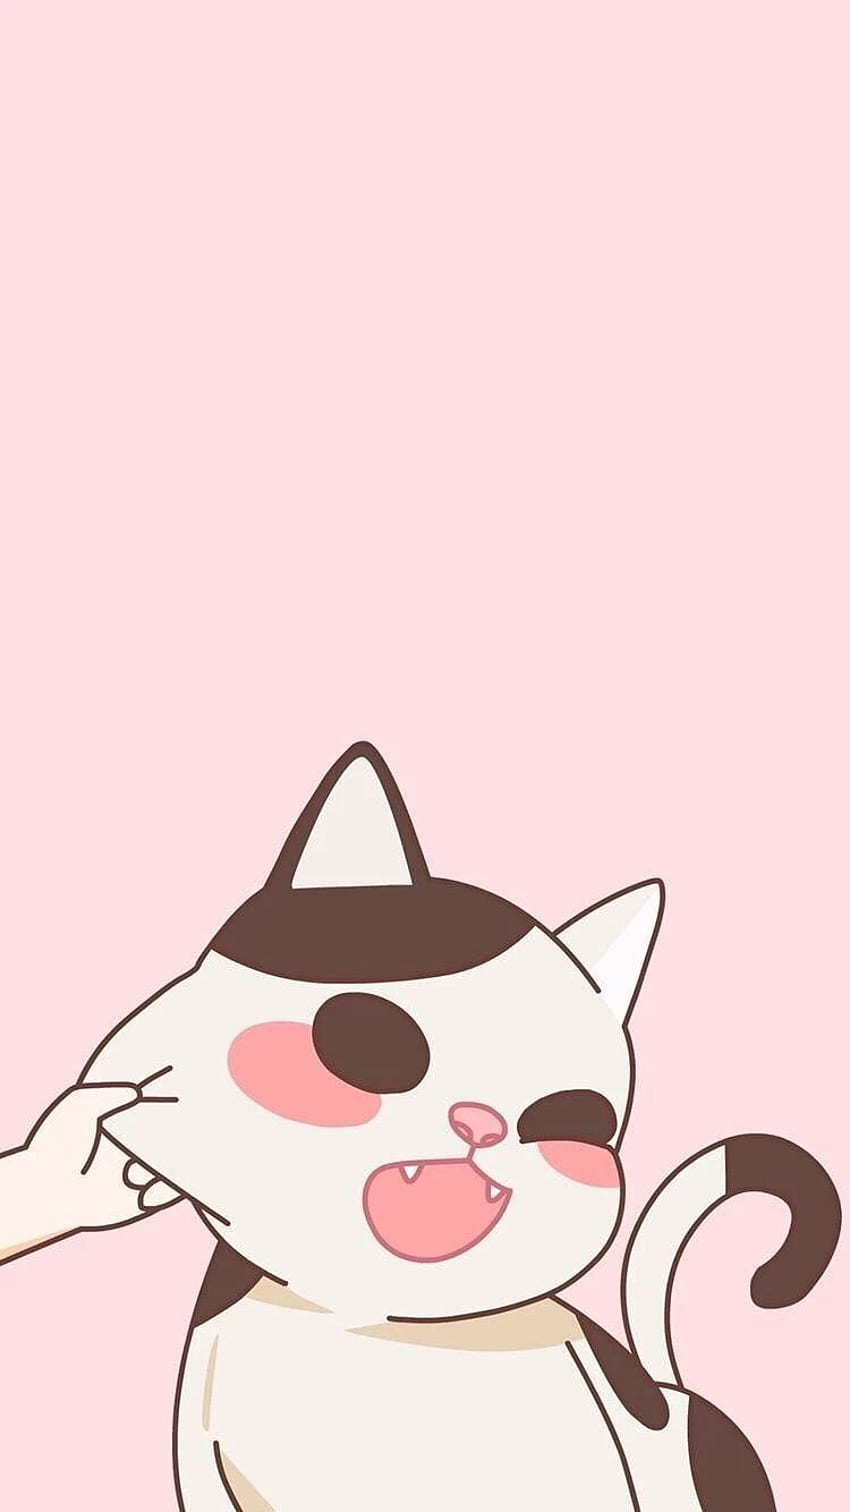 靈烏路 空 on 可愛的貓咪(=￣ω￣=). Cat phone, Cute Anime Cat iPhone HD phone wallpaper